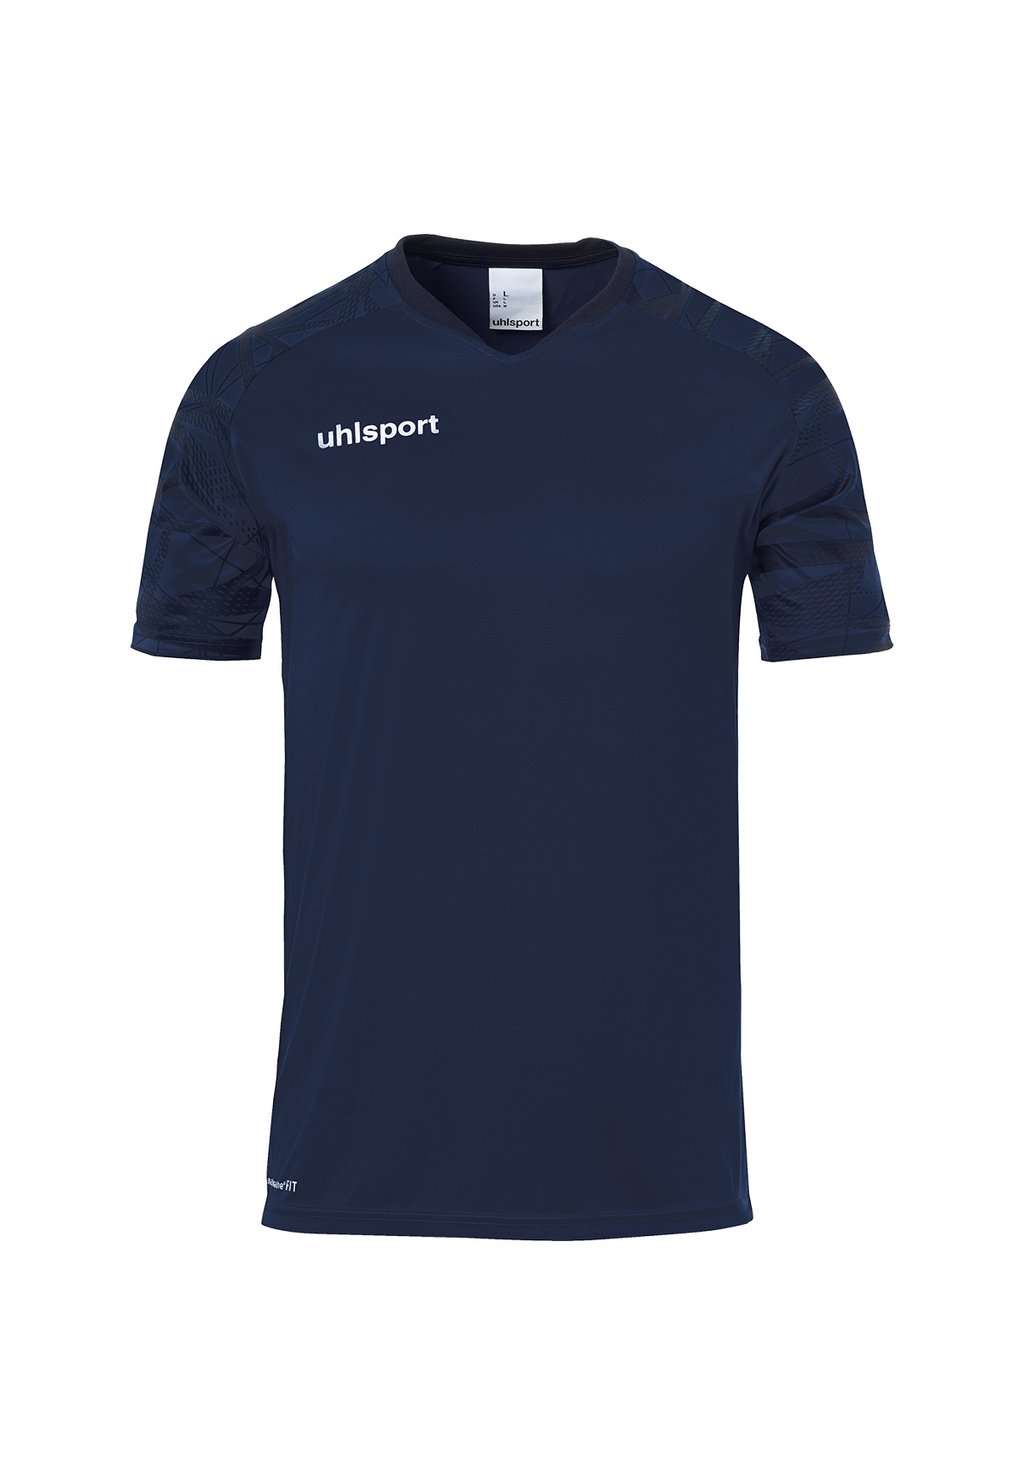 Футболка с принтом uhlsport, цвет marine marine футболка с принтом uhlsport цвет marine marine